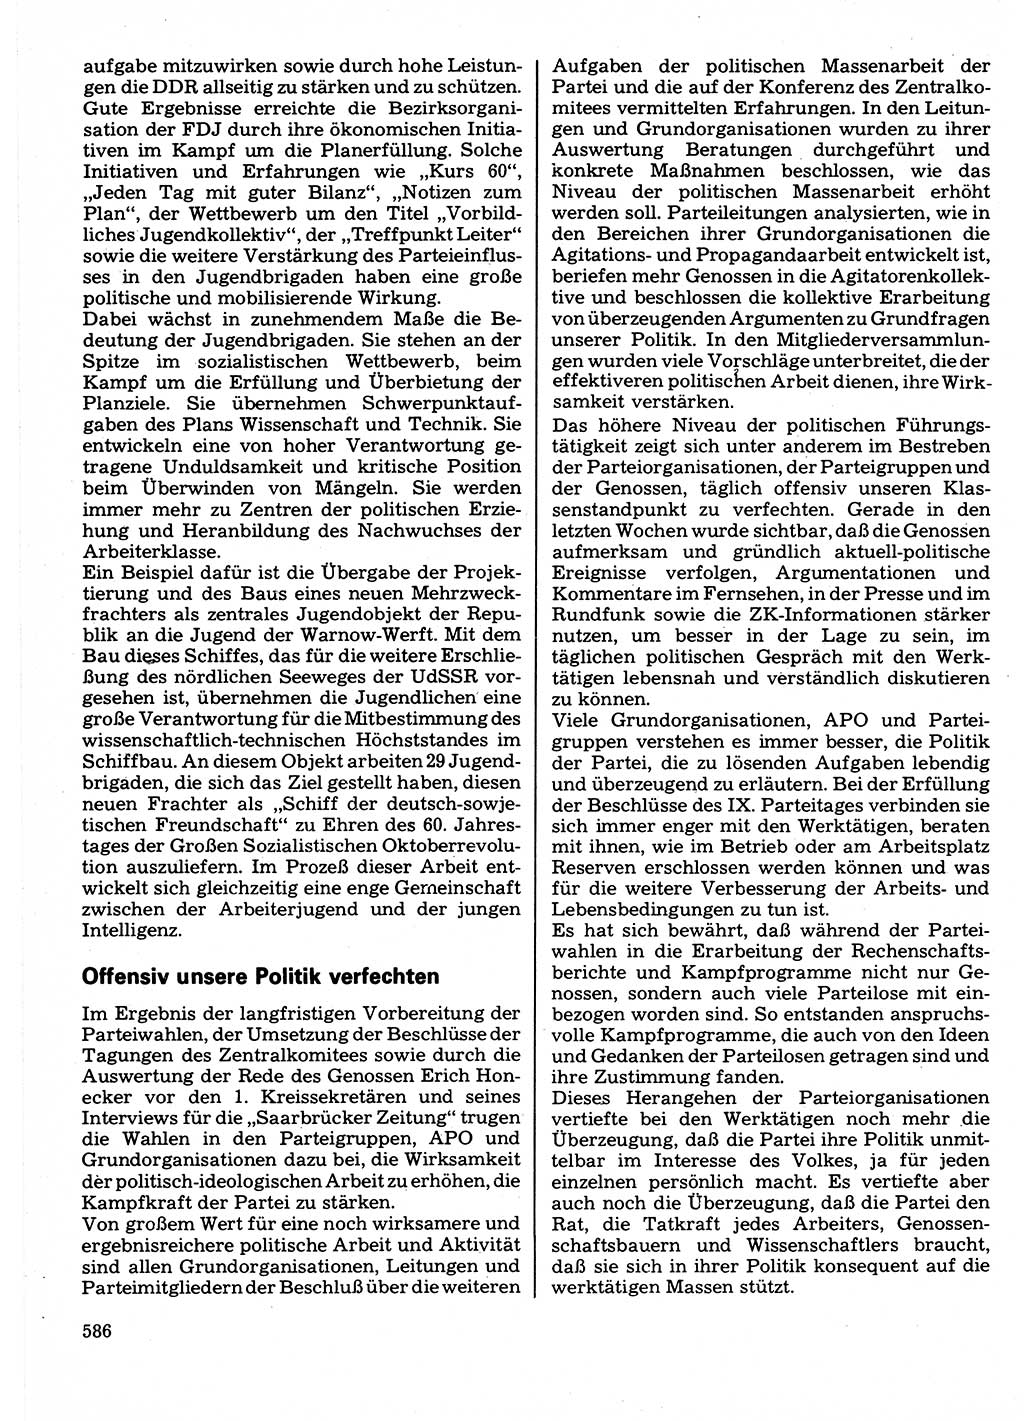 Neuer Weg (NW), Organ des Zentralkomitees (ZK) der SED (Sozialistische Einheitspartei Deutschlands) für Fragen des Parteilebens, 32. Jahrgang [Deutsche Demokratische Republik (DDR)] 1977, Seite 586 (NW ZK SED DDR 1977, S. 586)